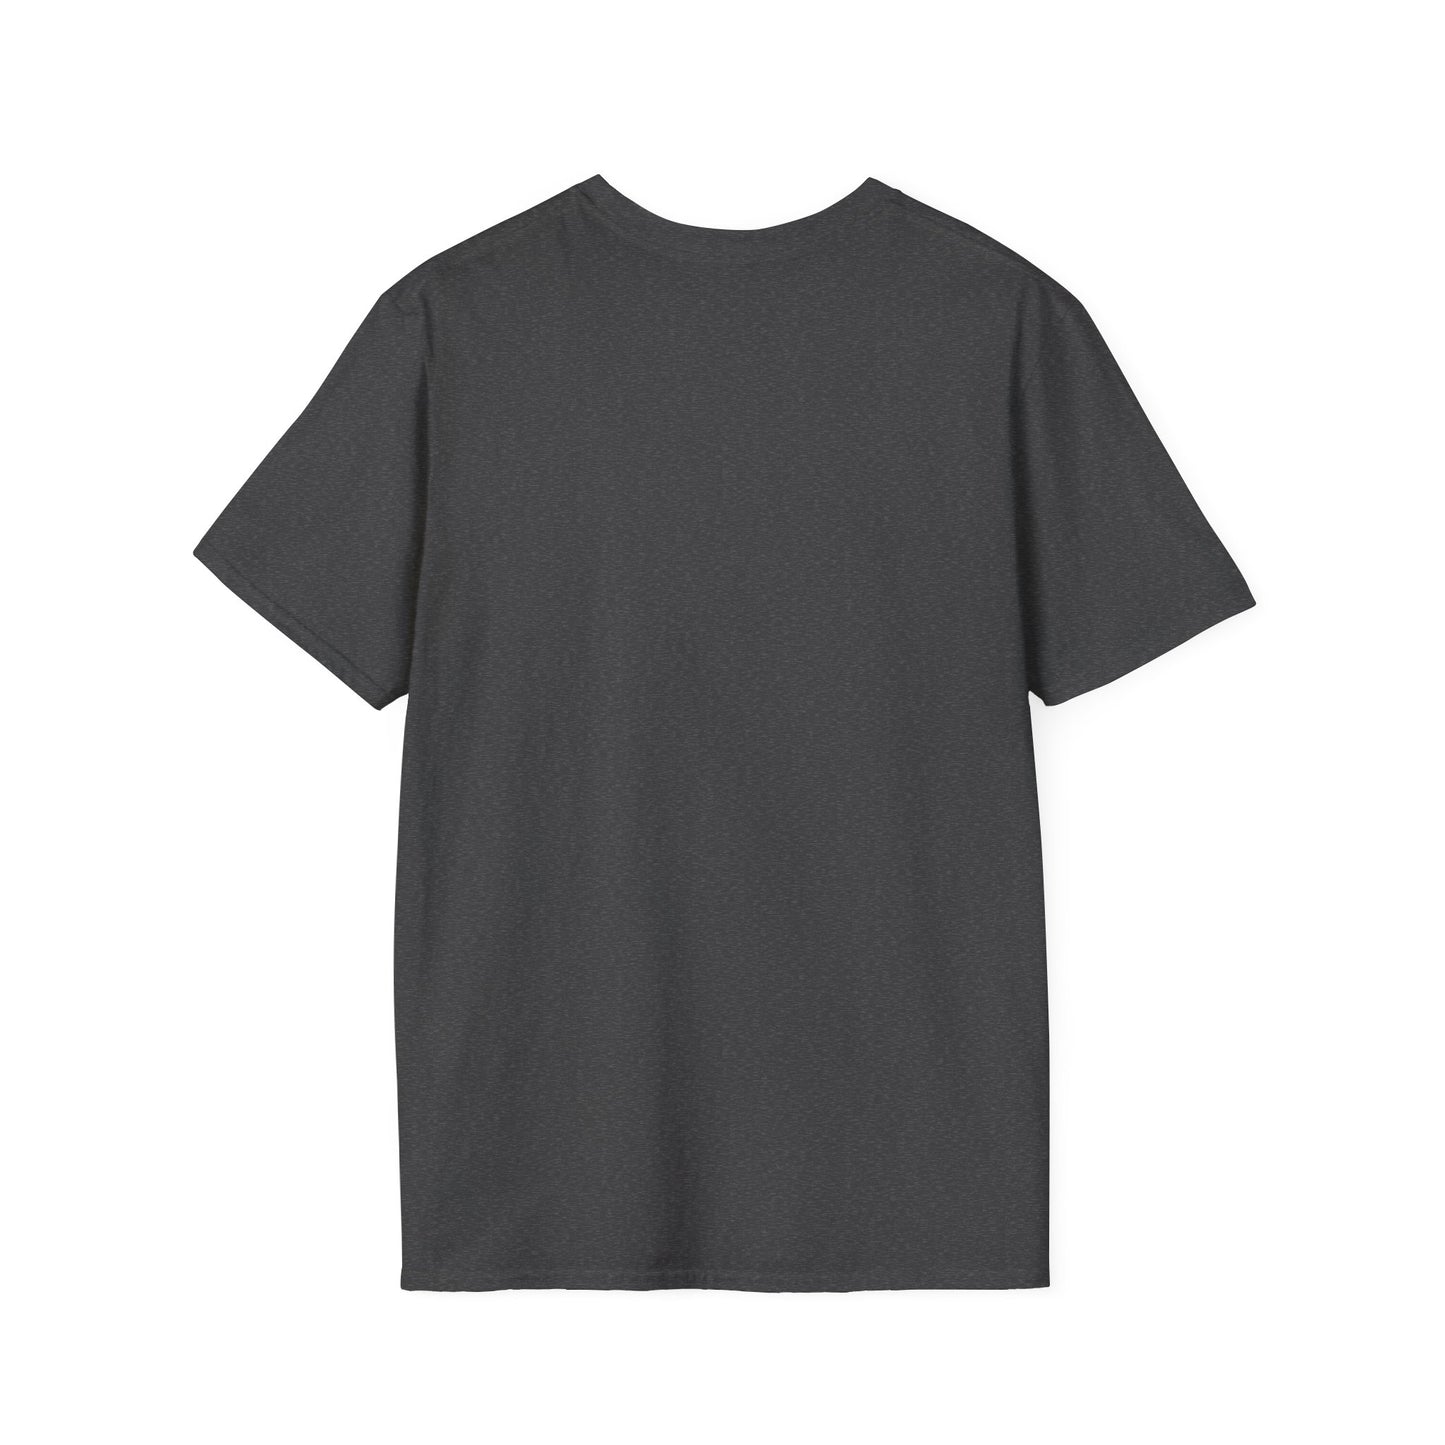 TG-10 Unisex Softstyle T-Shirt